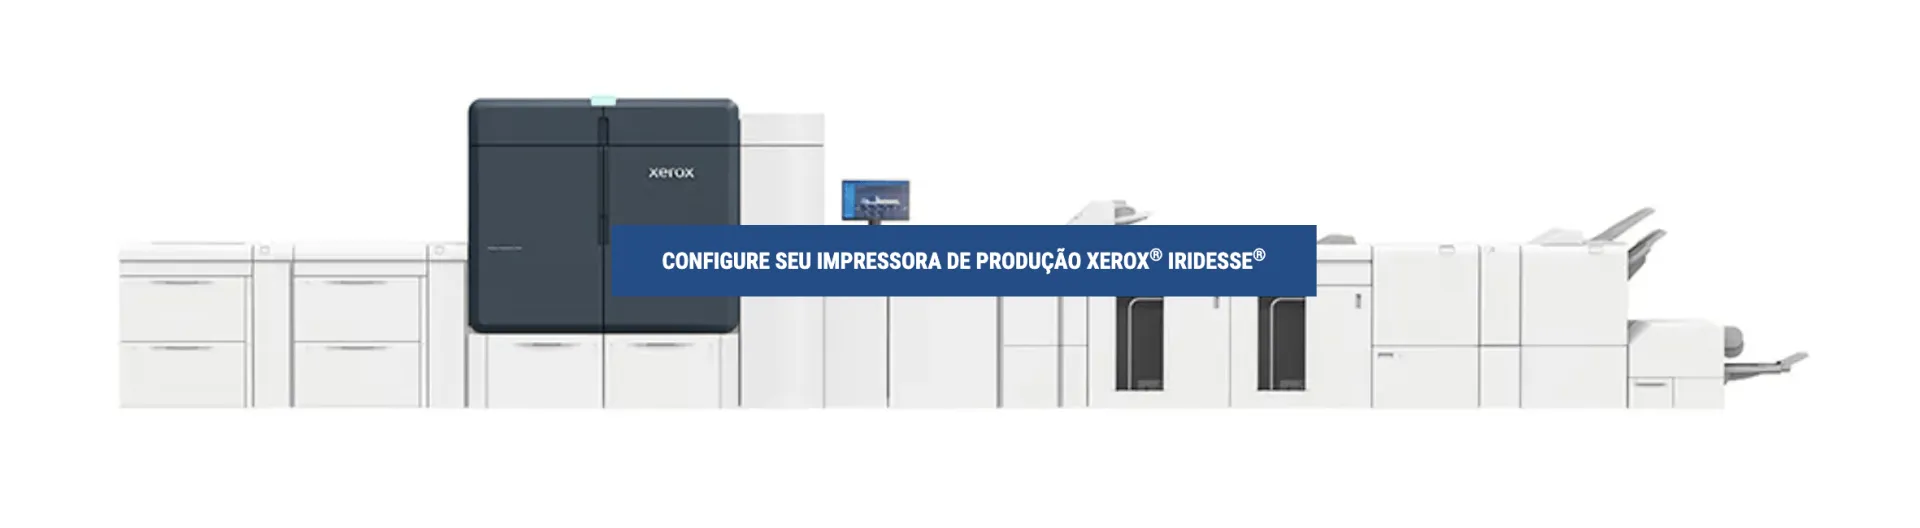 Impressora de produção Xerox® Iridesse®: Potencializa um futuro mais brilhante, proporcionando mais impacto por página impressa através do aprimoramento de especialidade digital.